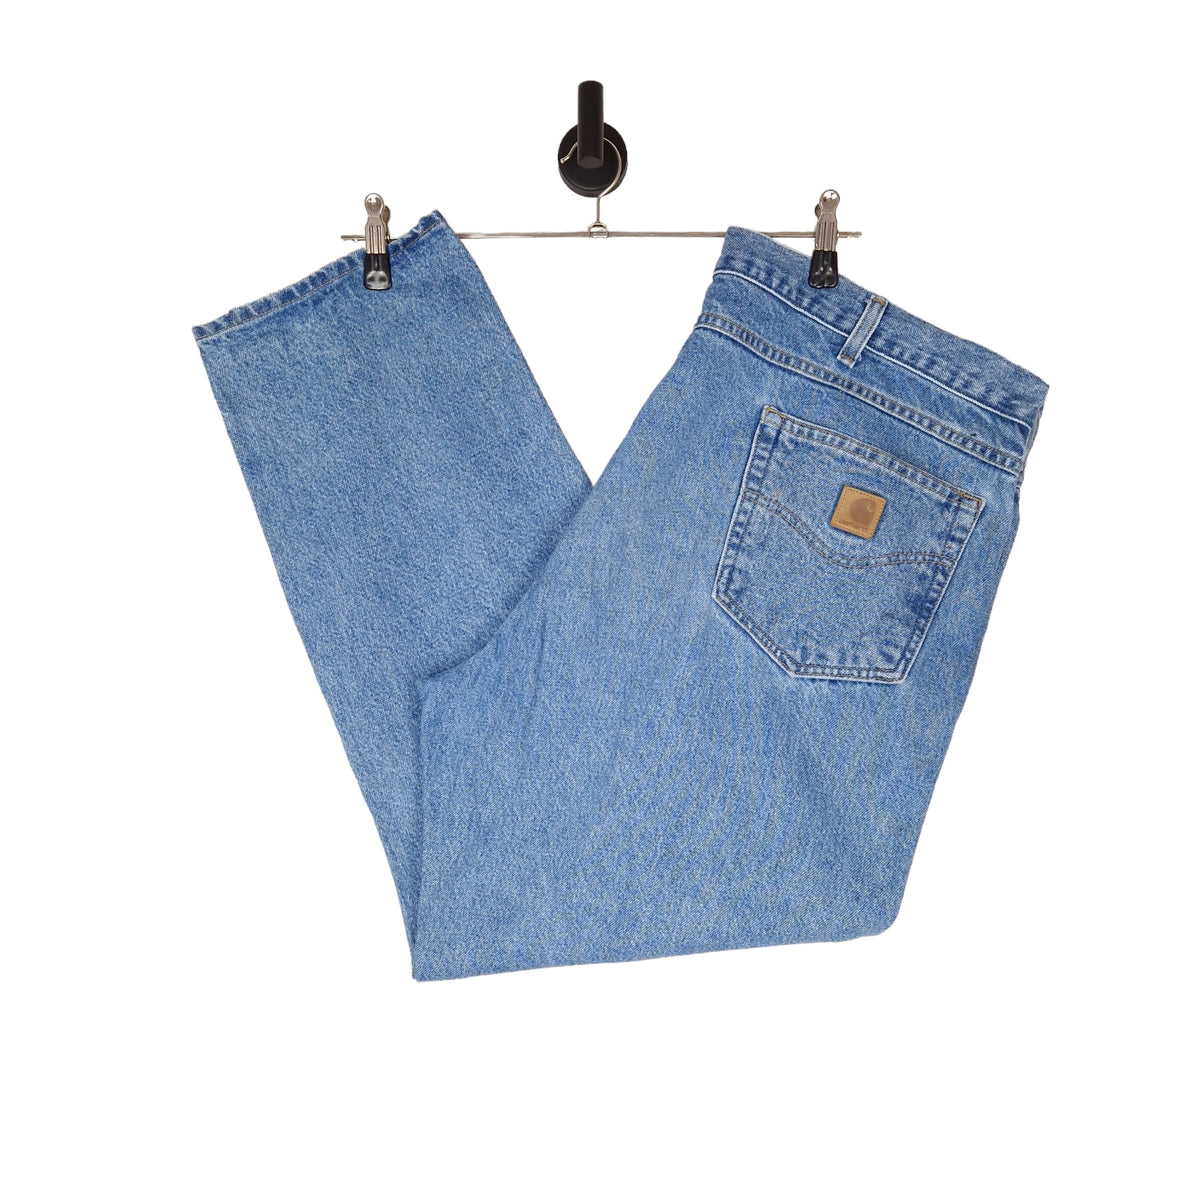 Carhartt Denim Jeans - Size W44 L30